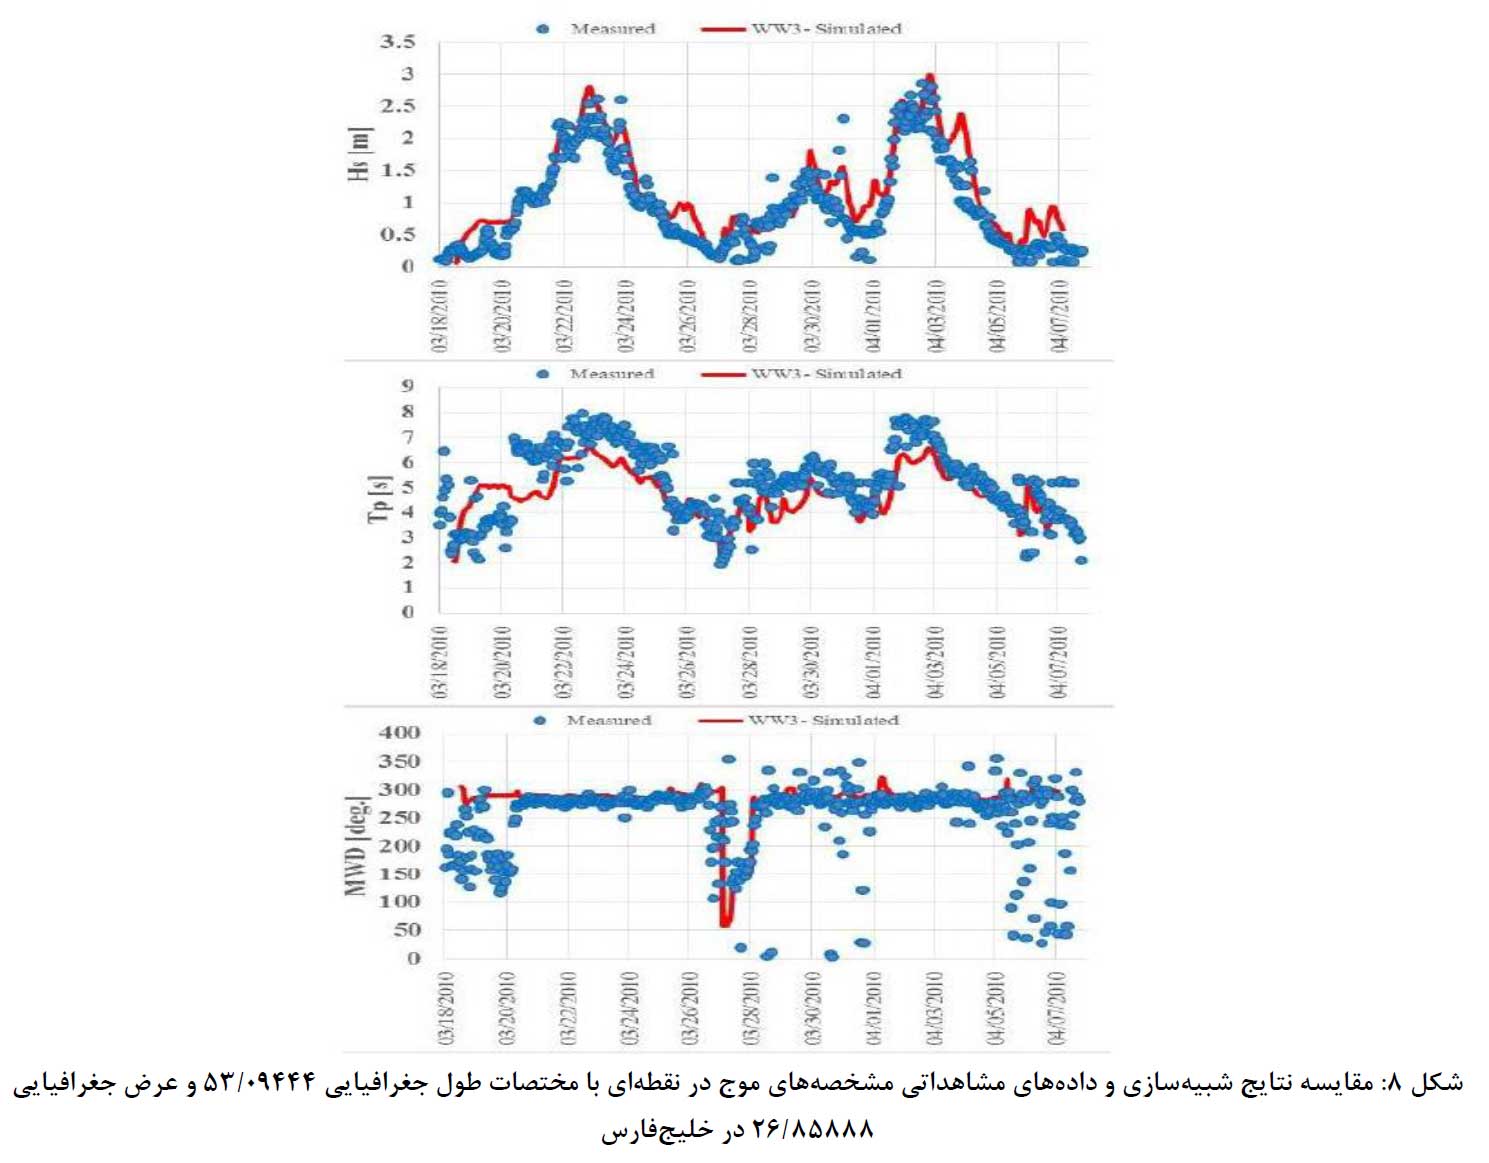 مقایسه نتایج شبیه سازی و داده های مشاهداتی خلیج فارس